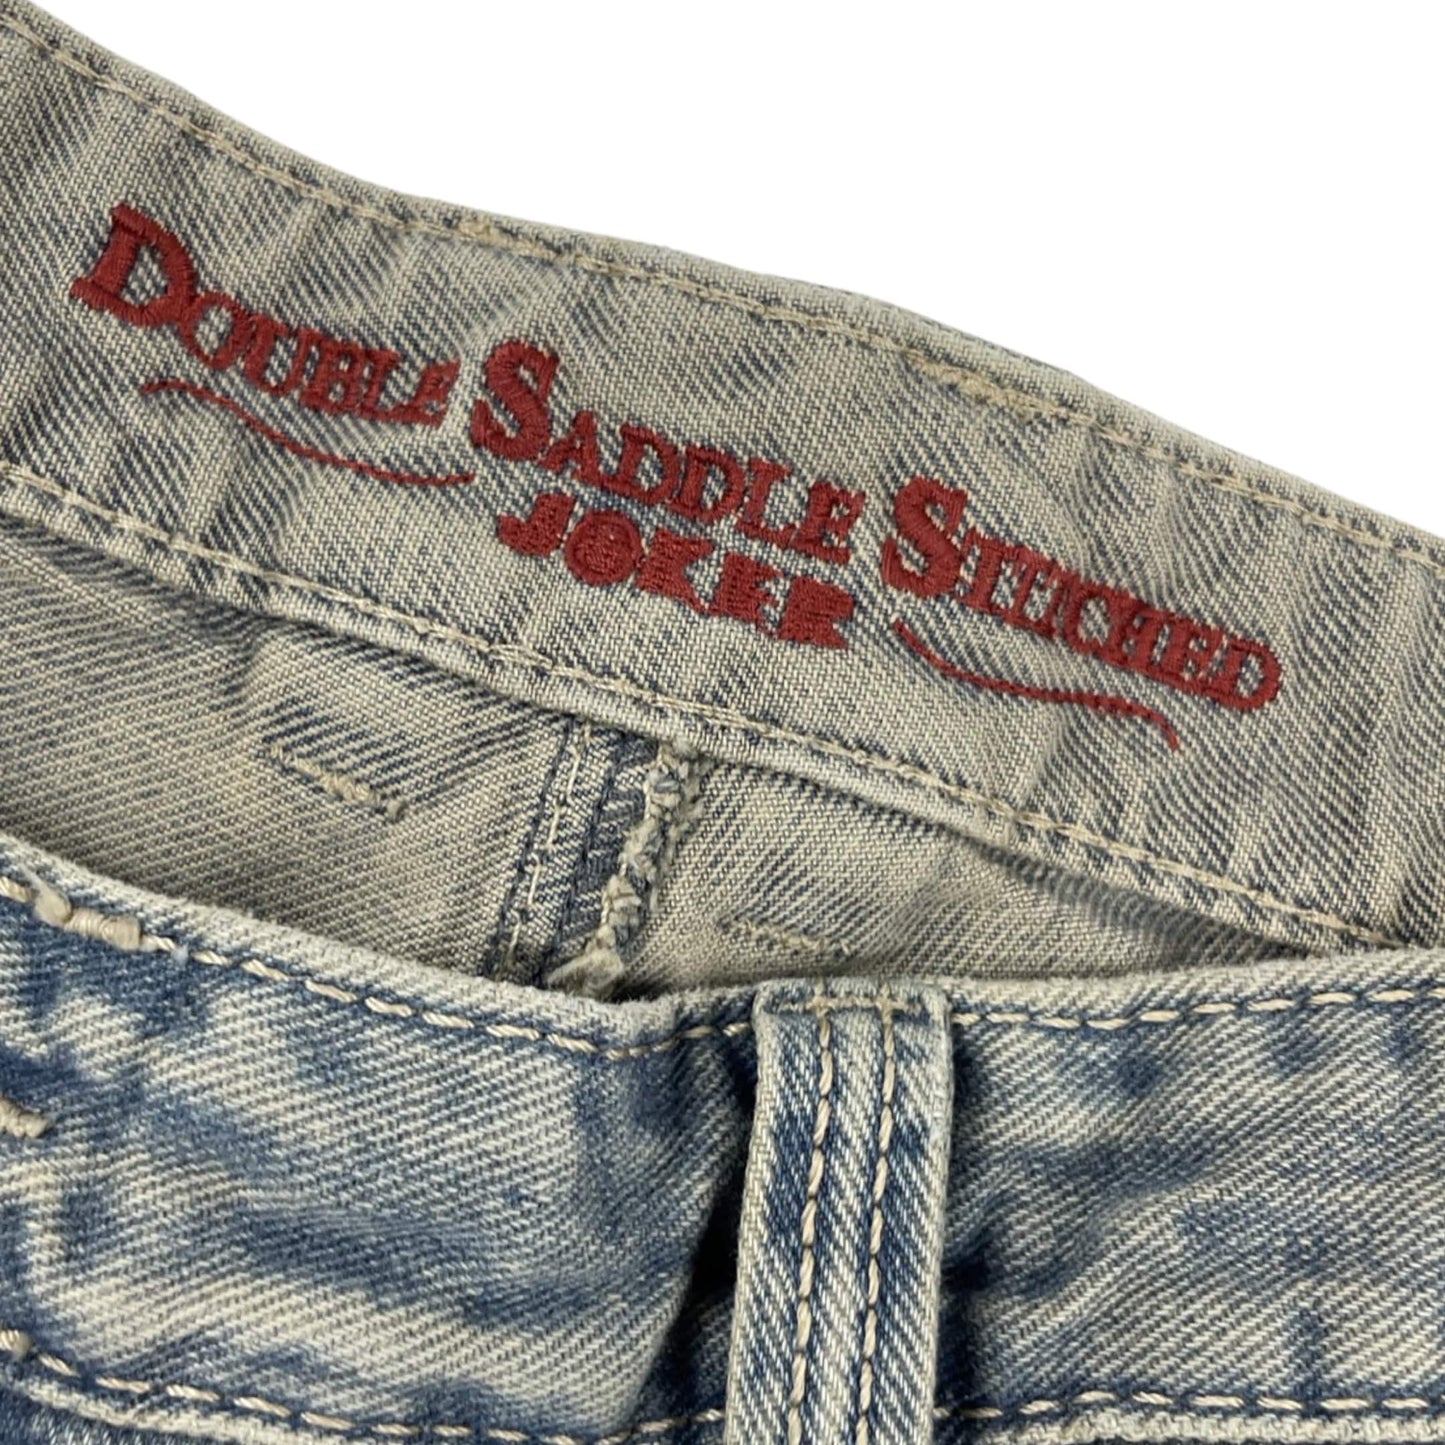 Vintage Light Wash Denim Jeans W36L34